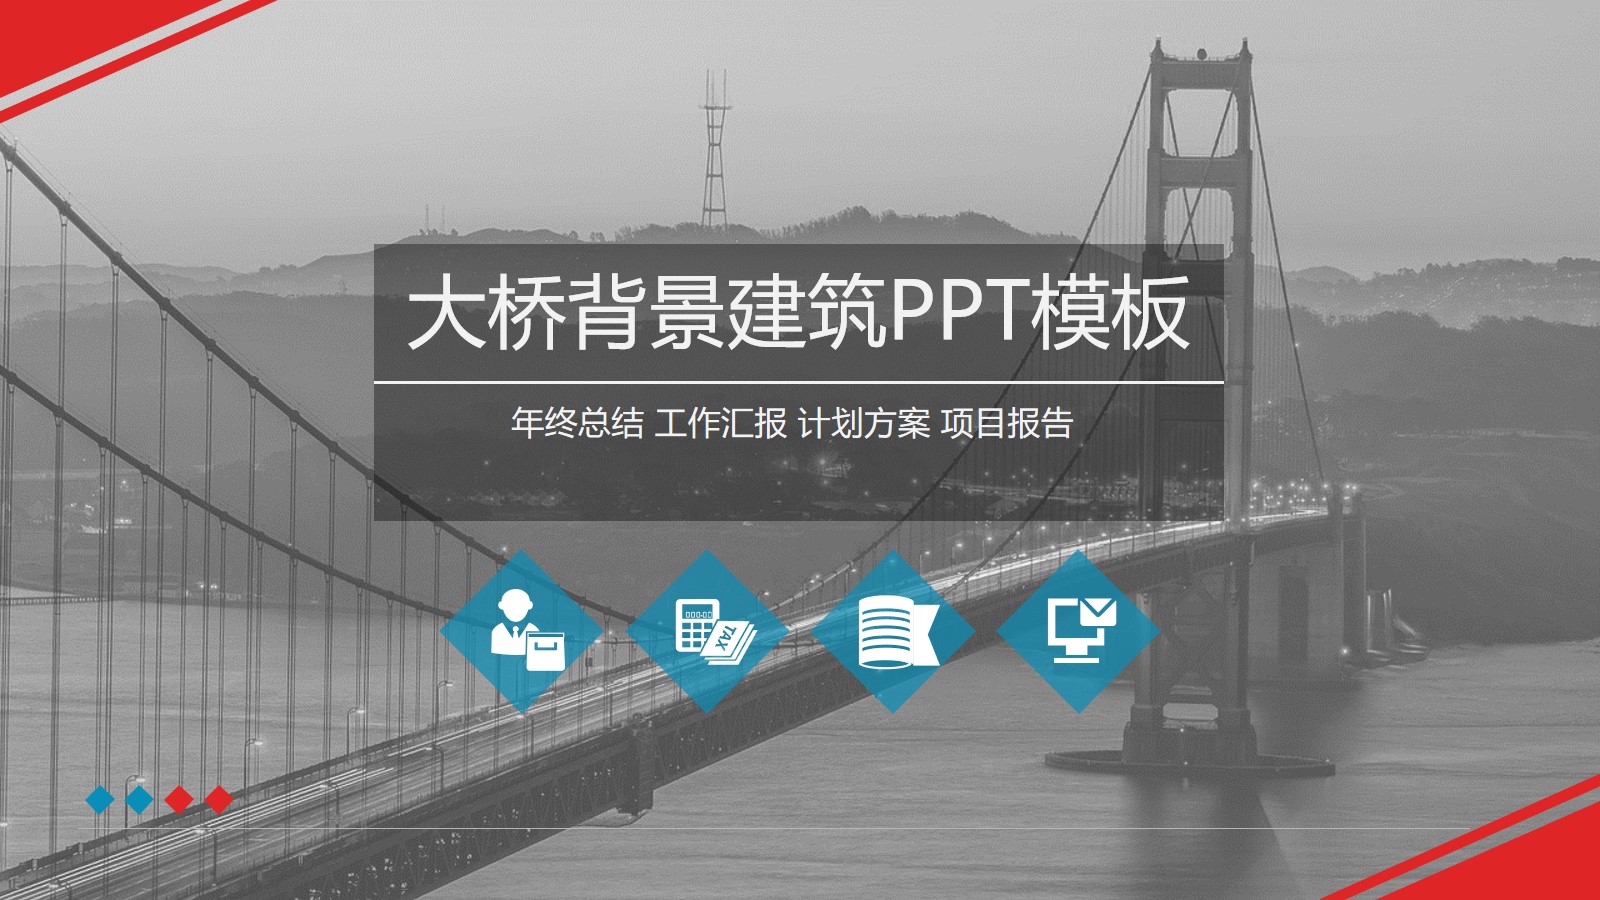 大桥背景建筑PPT模板 建筑行业PPT背景图片